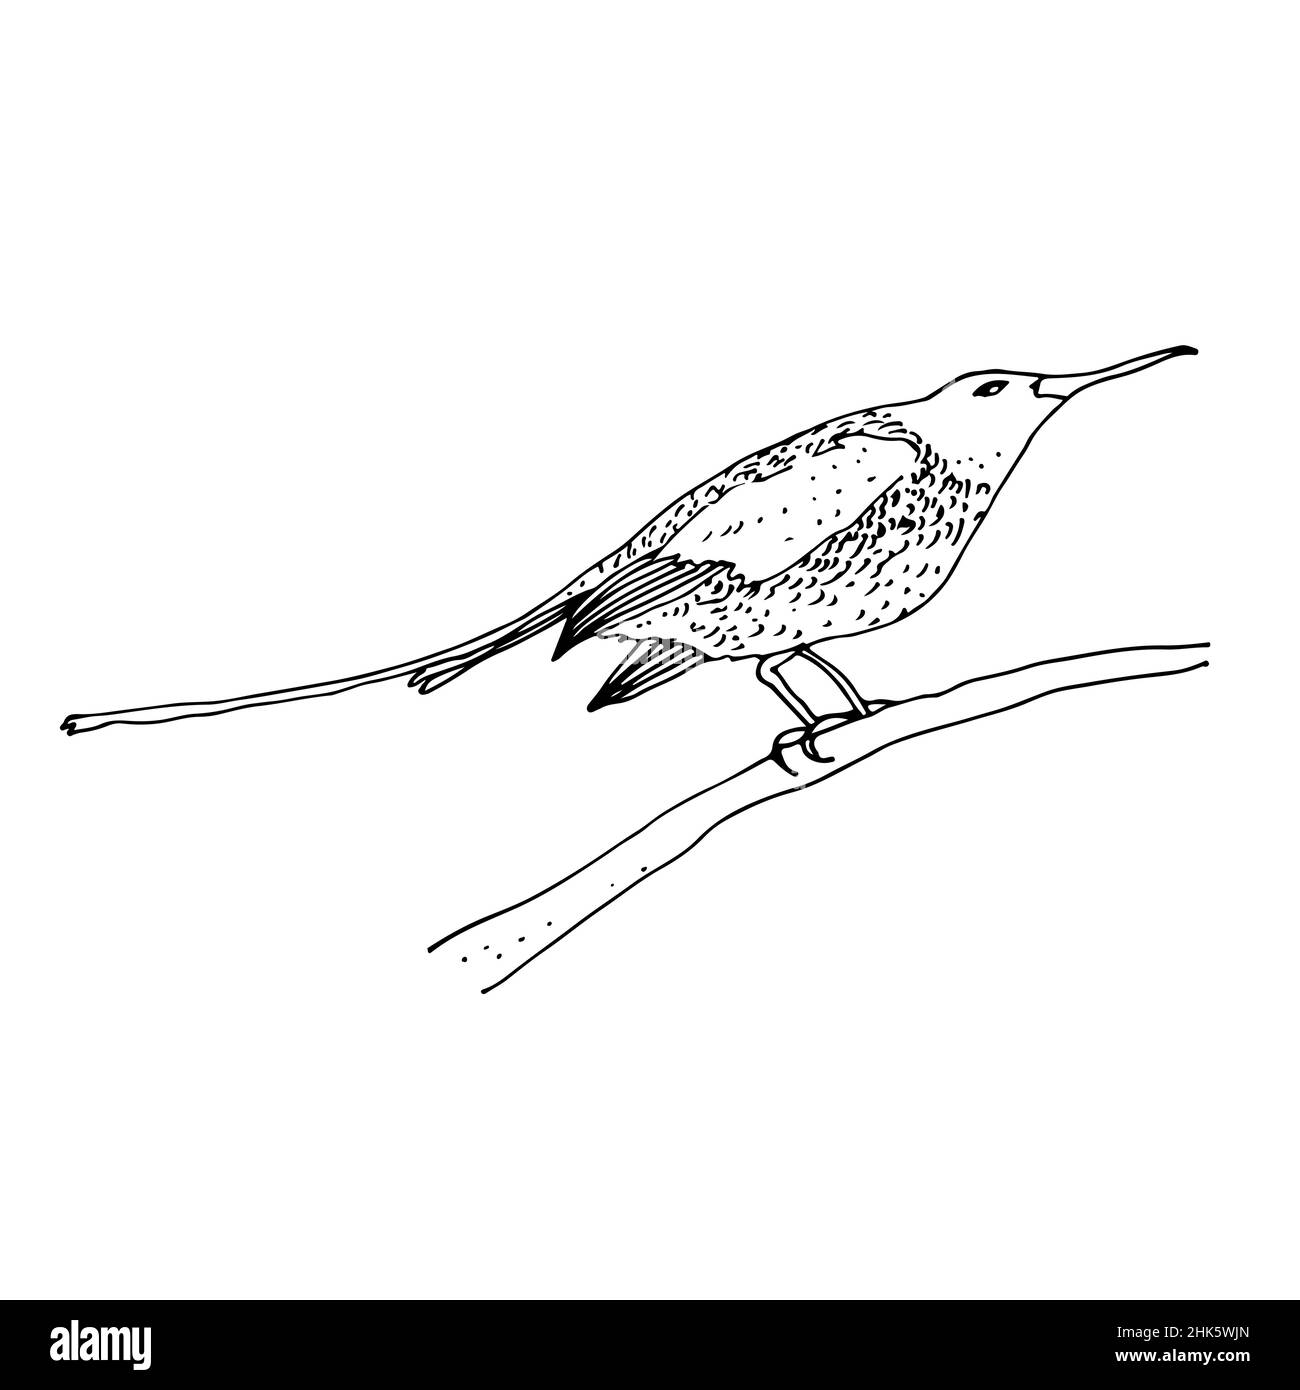 Sunbird vector illustration, bird family Nectariniidae of passerine birds, isolated on white background Stock Vector